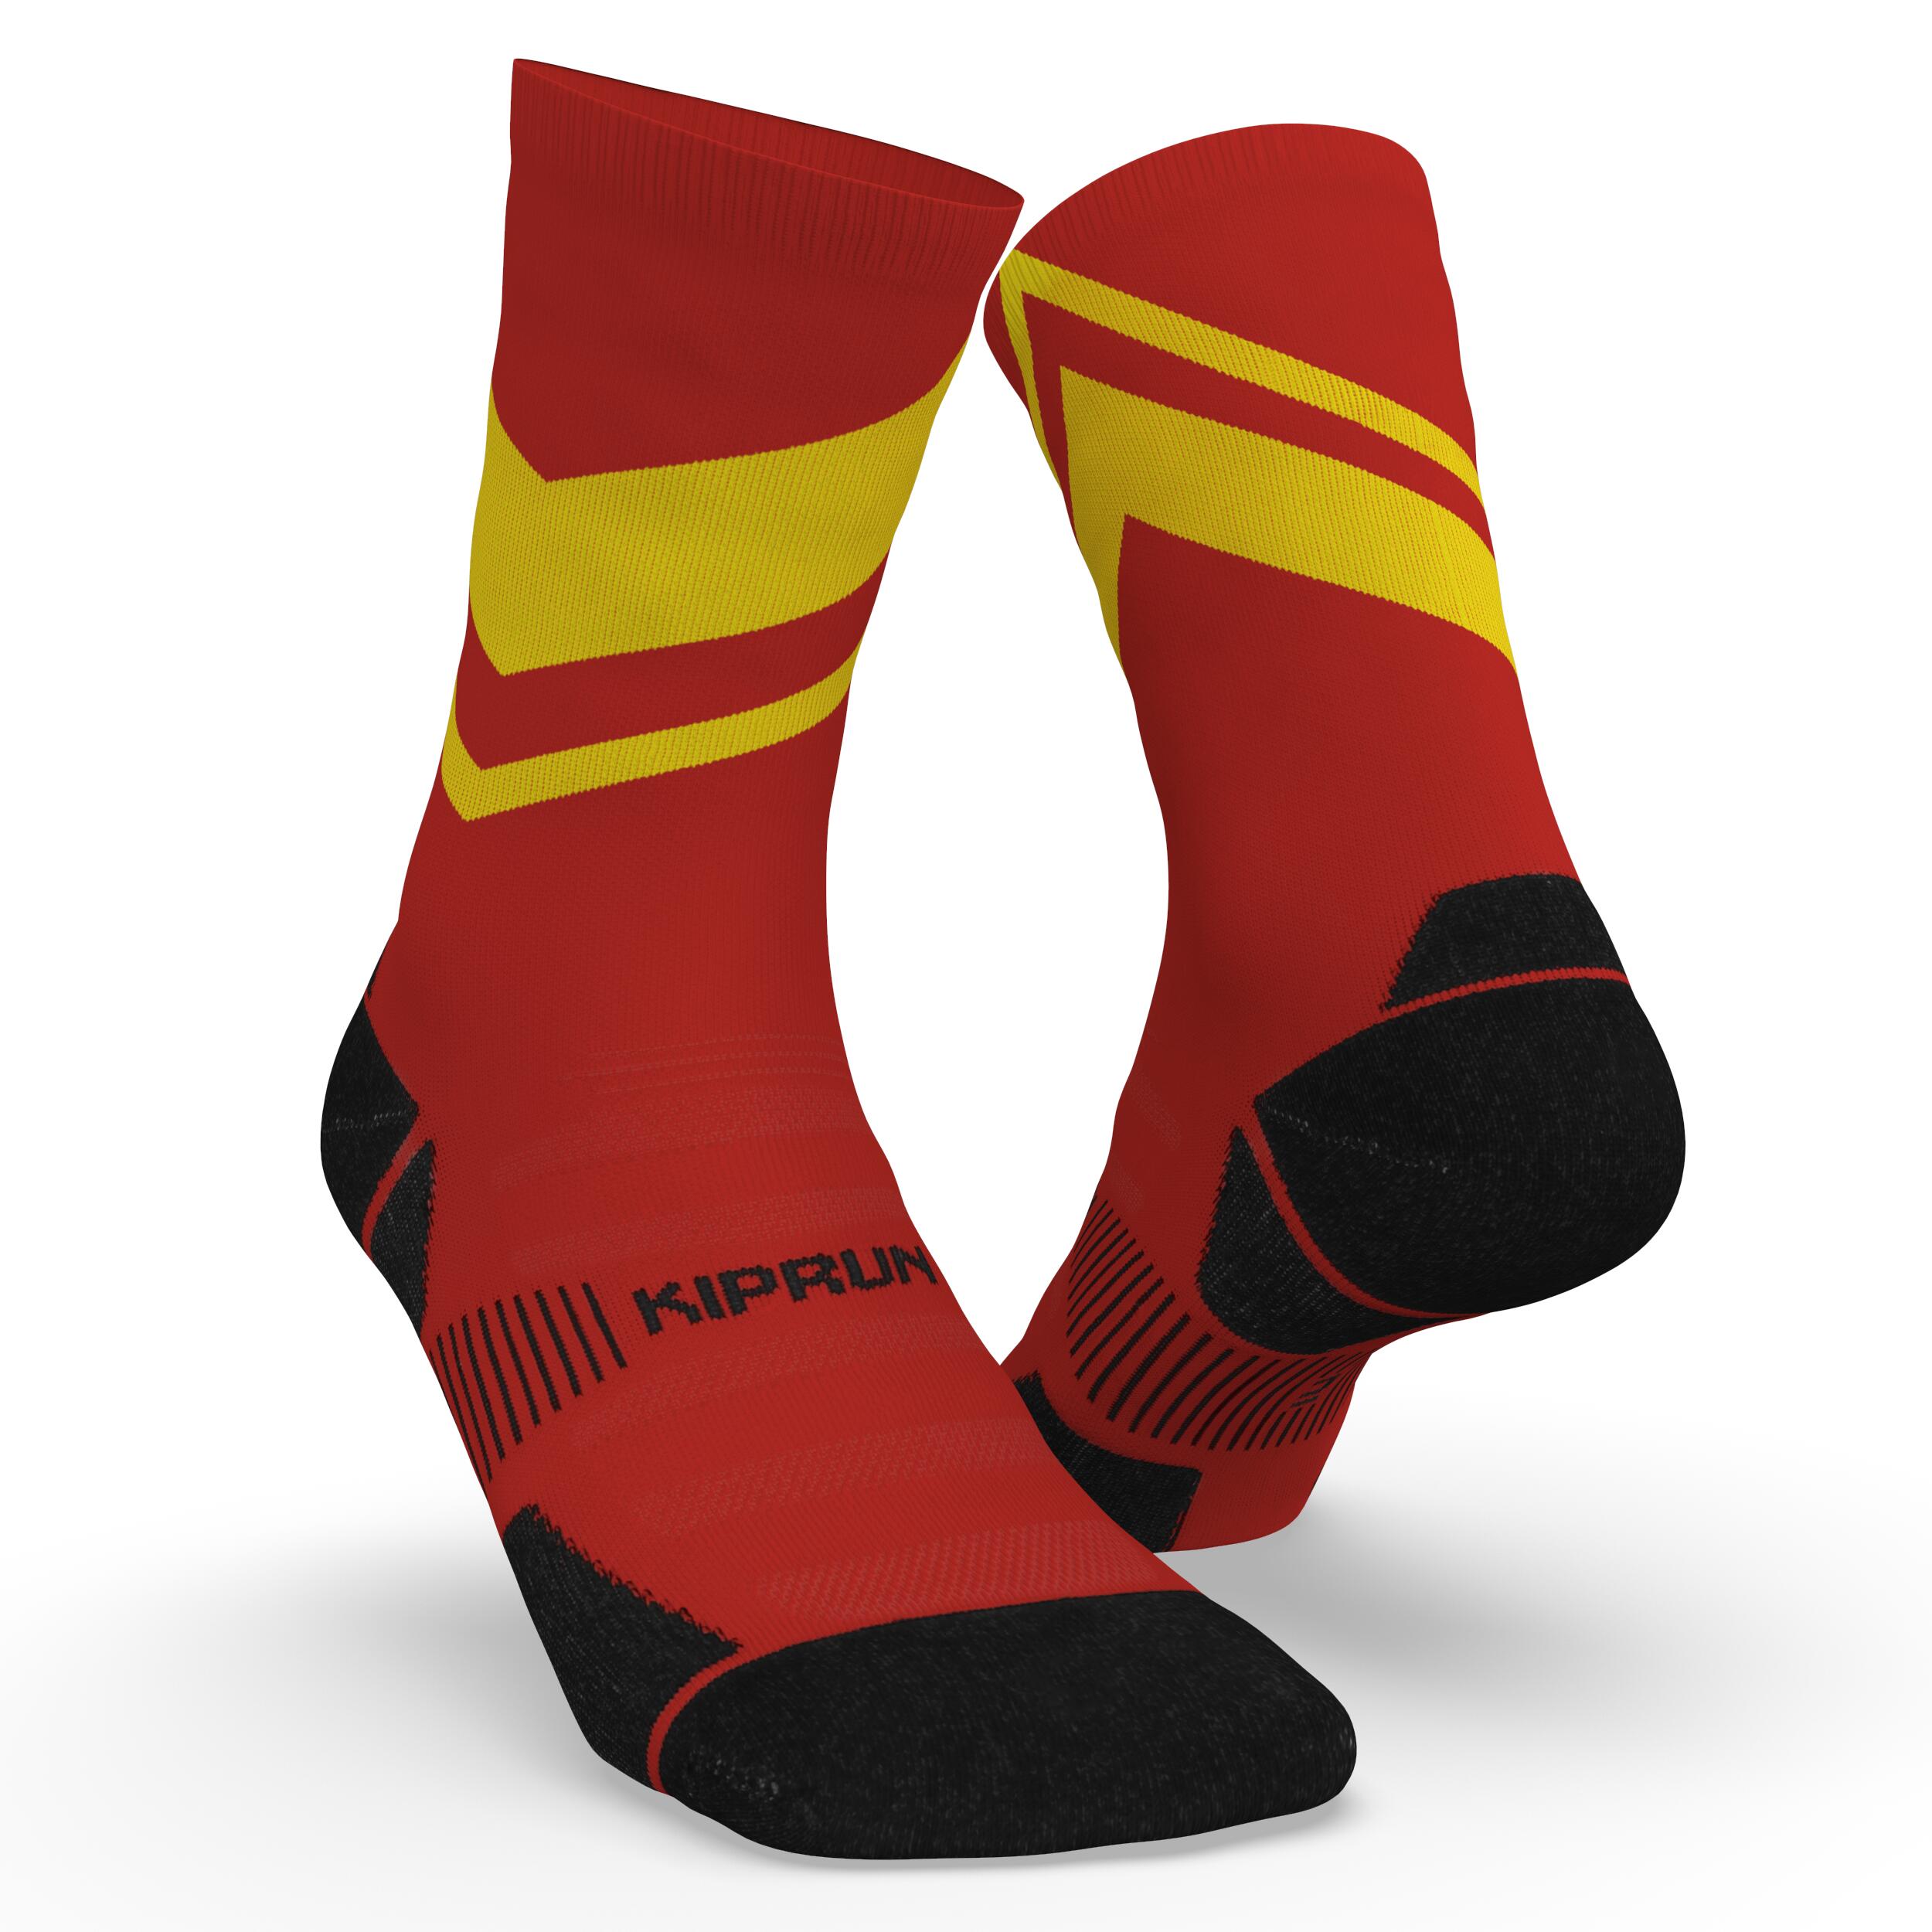 Șosete Mid Groase Alergare RUN900 Roșu-Galben Adulți Adulți imagine noua